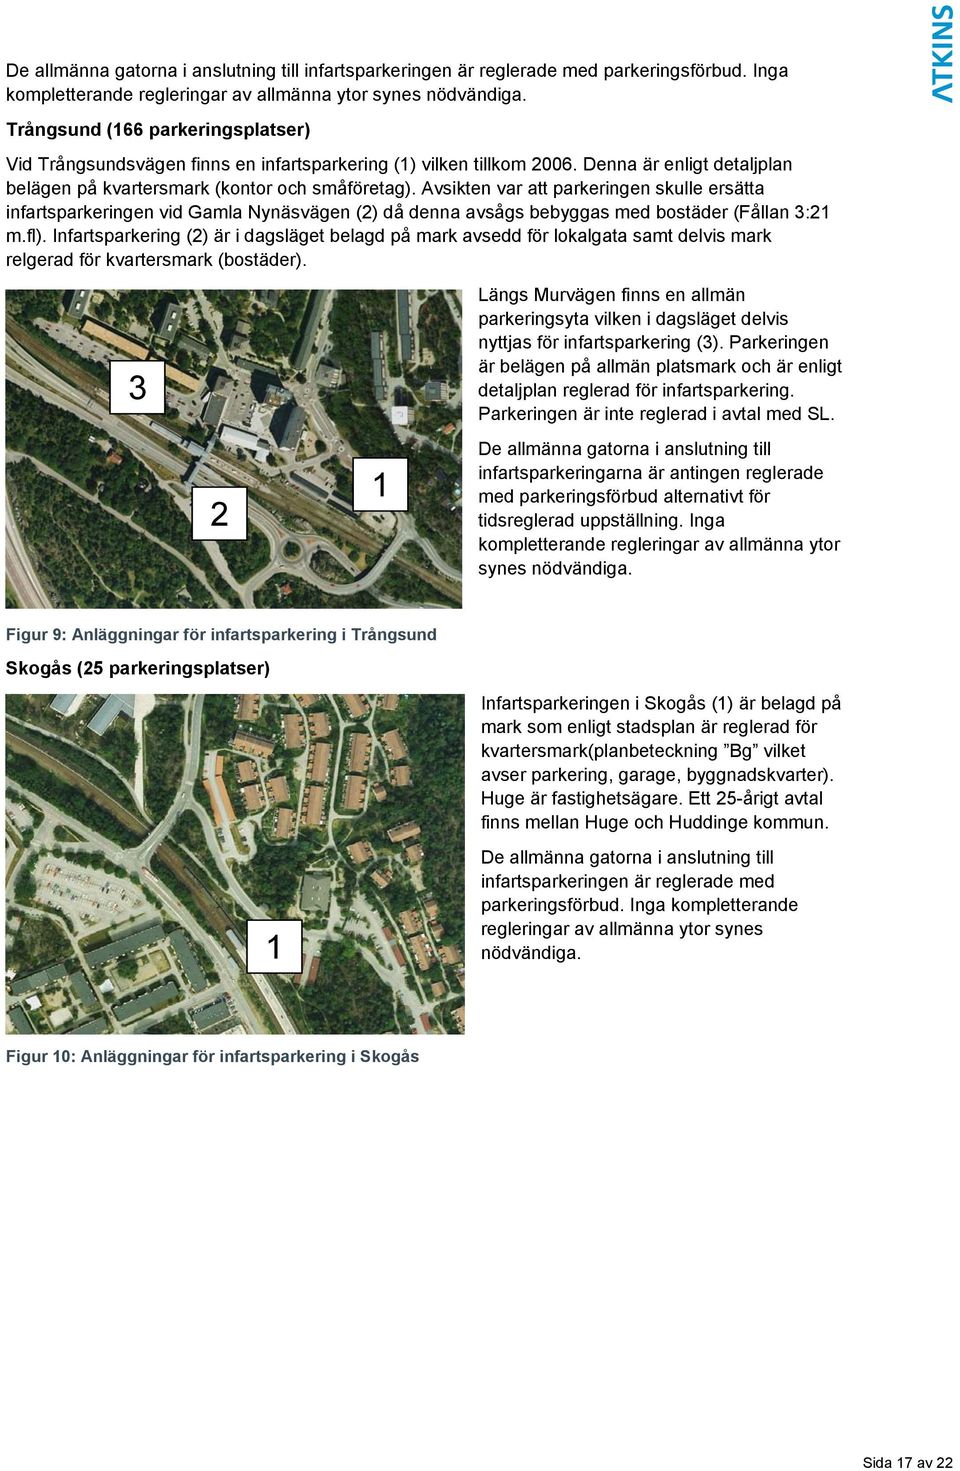 Avsikten var att parkeringen skulle ersätta infartsparkeringen vid Gamla Nynäsvägen (2) då denna avsågs bebyggas med bostäder (Fållan 3:21 m.fl).